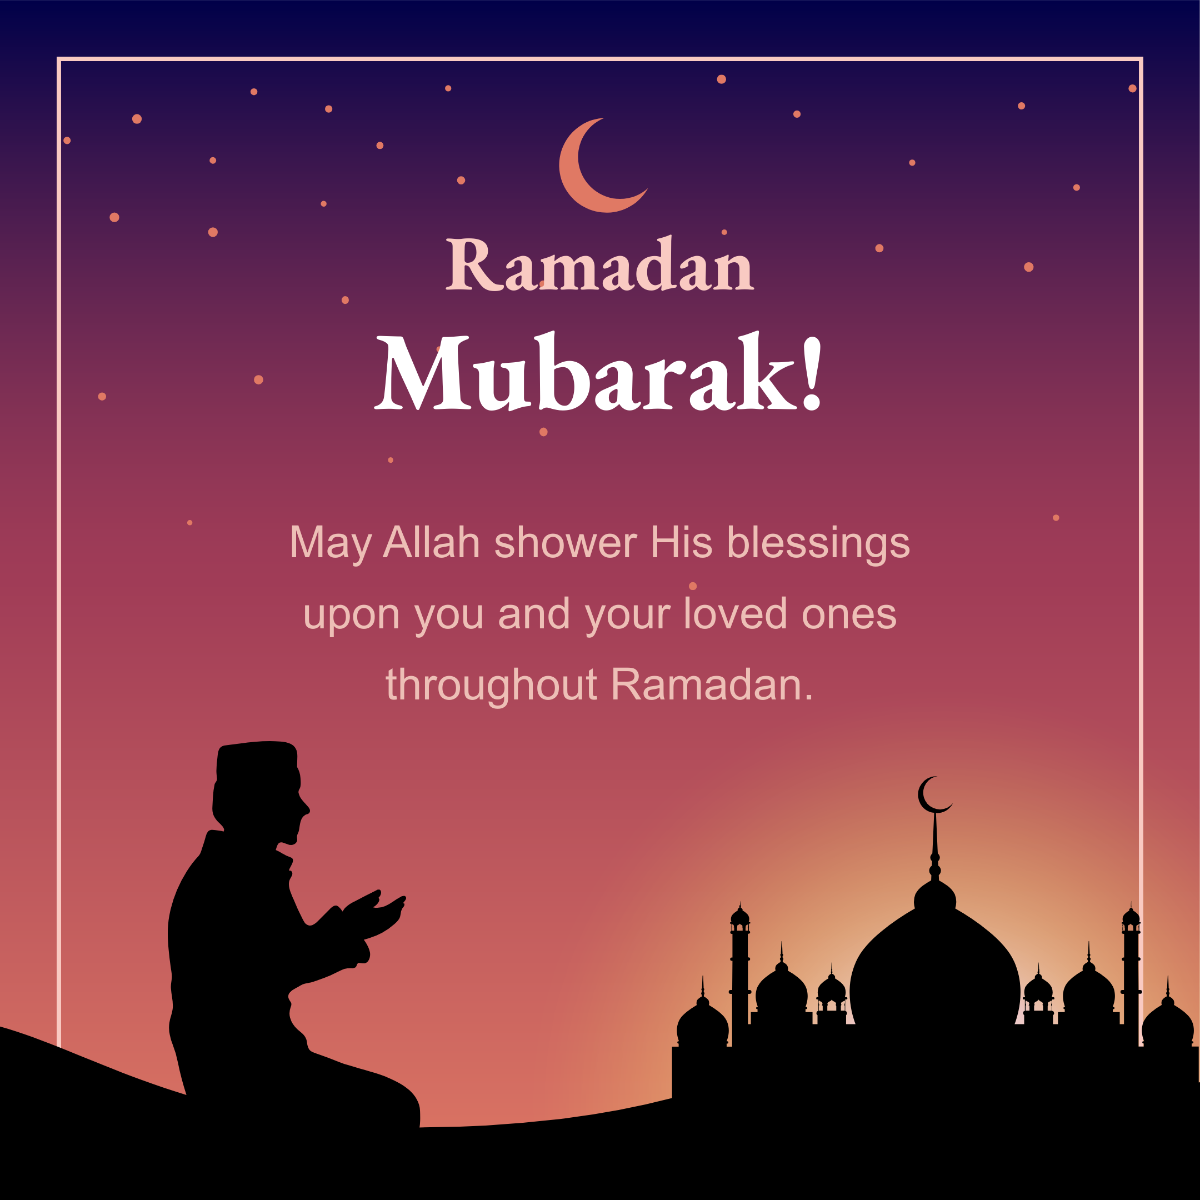 Free Ramadan Mubarak Social Media Post Template